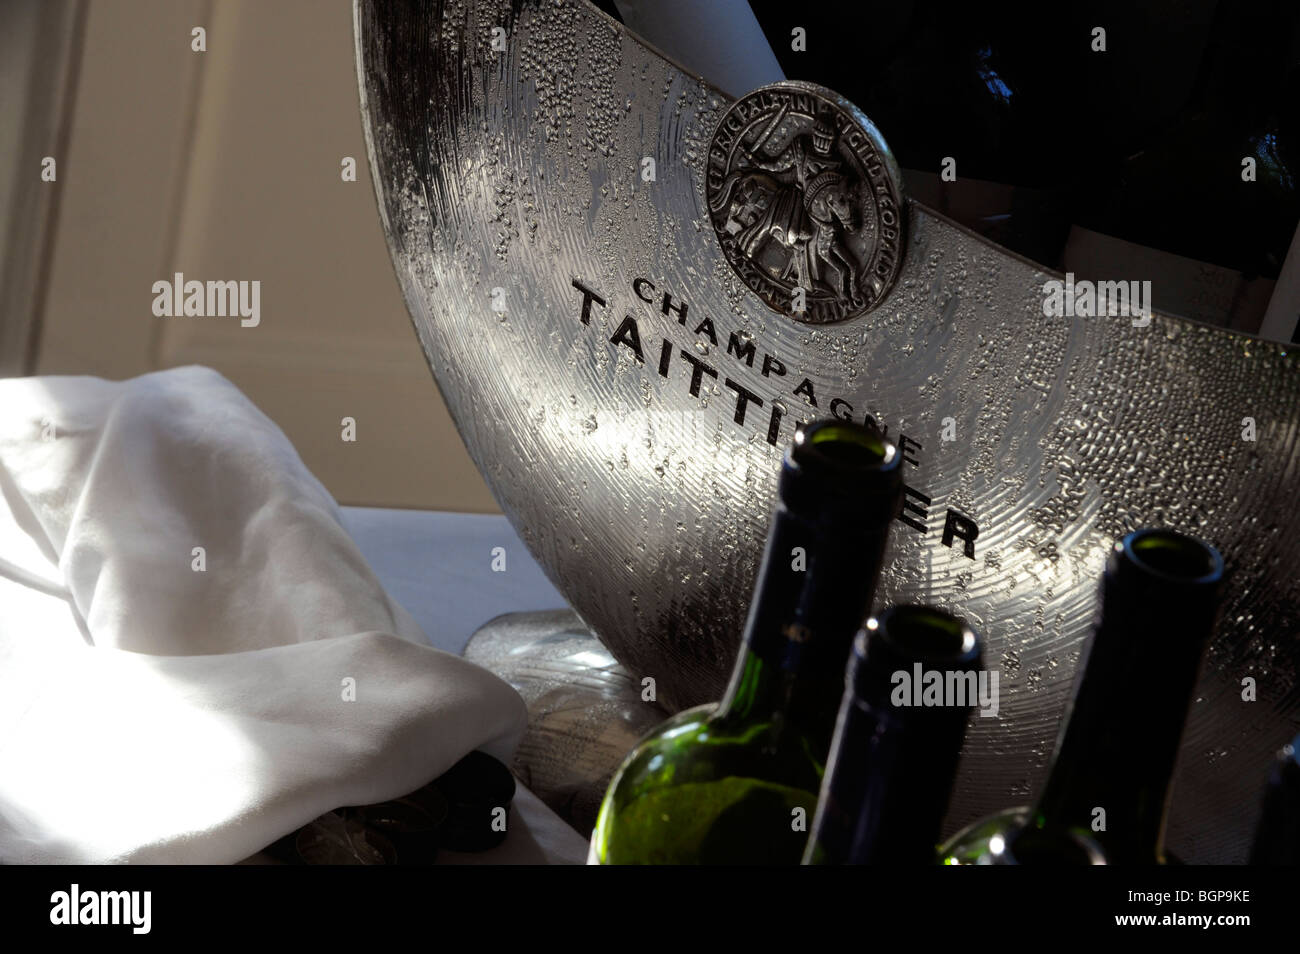 Flaschen Wein abkühlen in einen Eimer Taittinger Champagner Stockfotografie  - Alamy